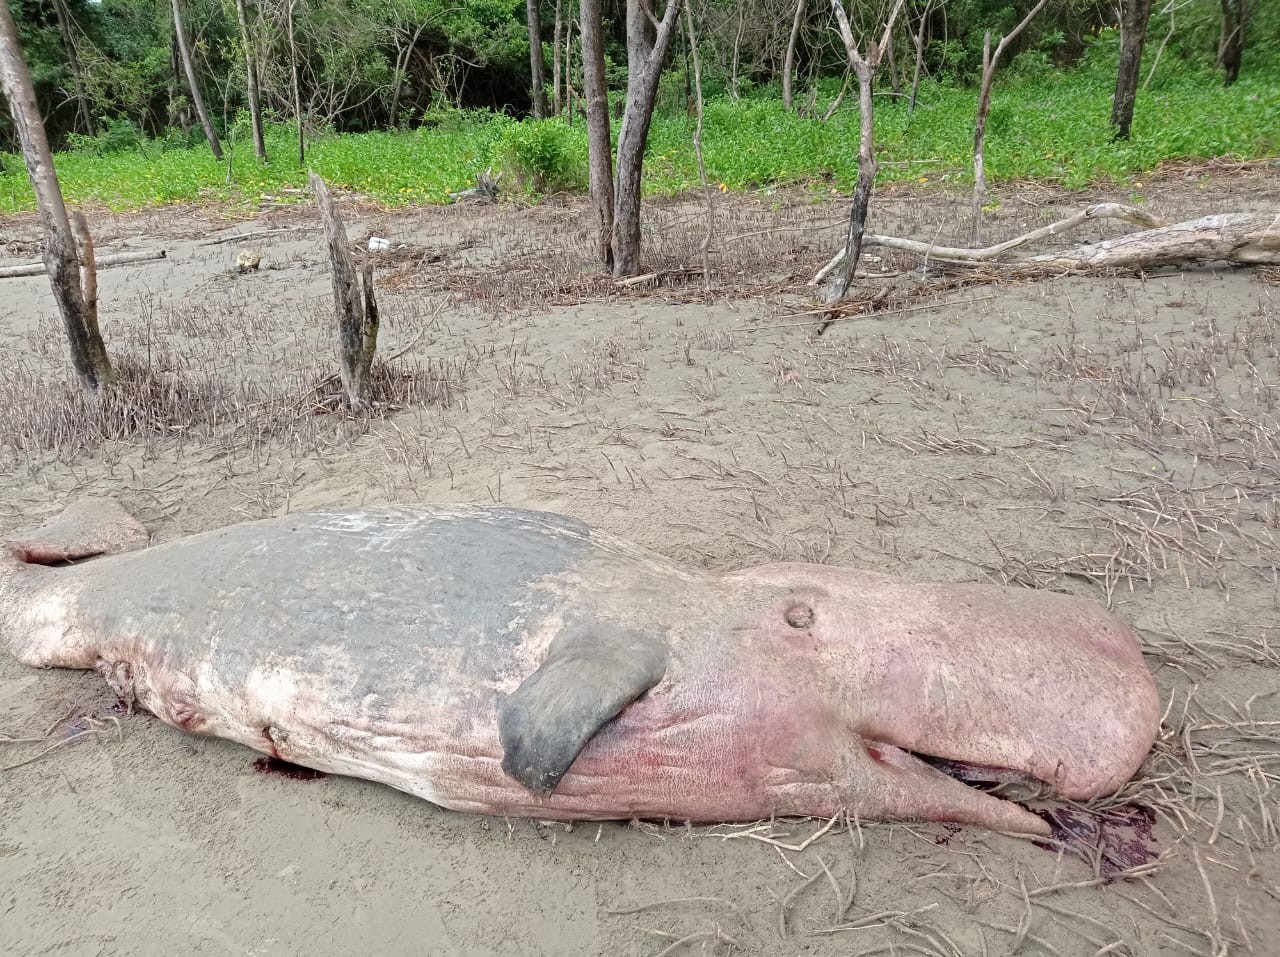 Filhote morto de baleia encalha na praia do Goiabal, no Amapá